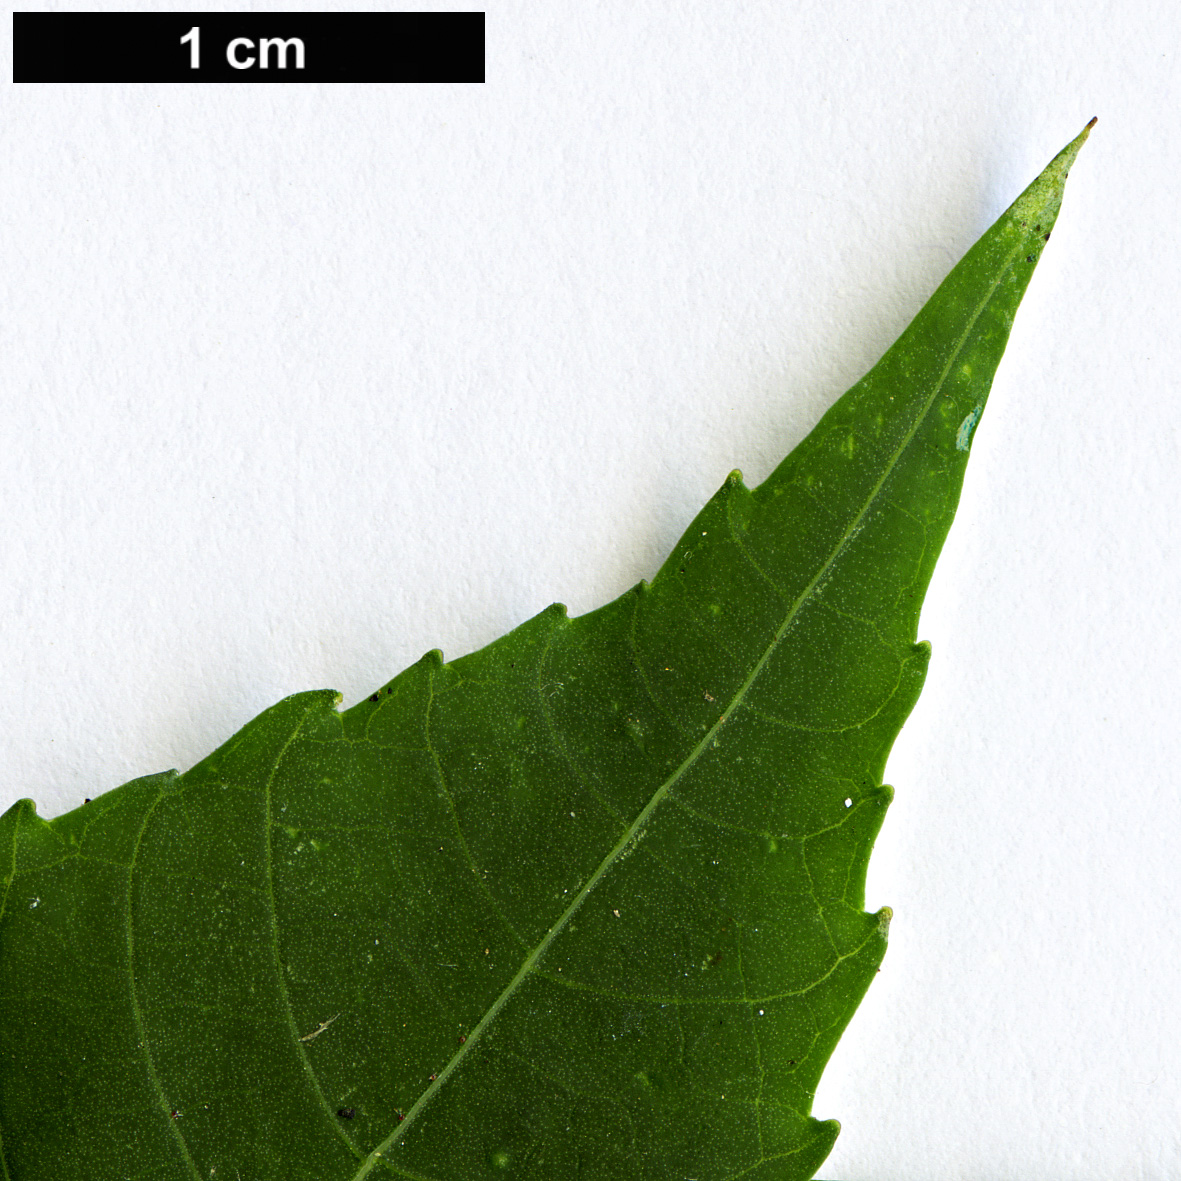 High resolution image: Family: Euphorbiaceae - Genus: Ricinus - Taxon: communis